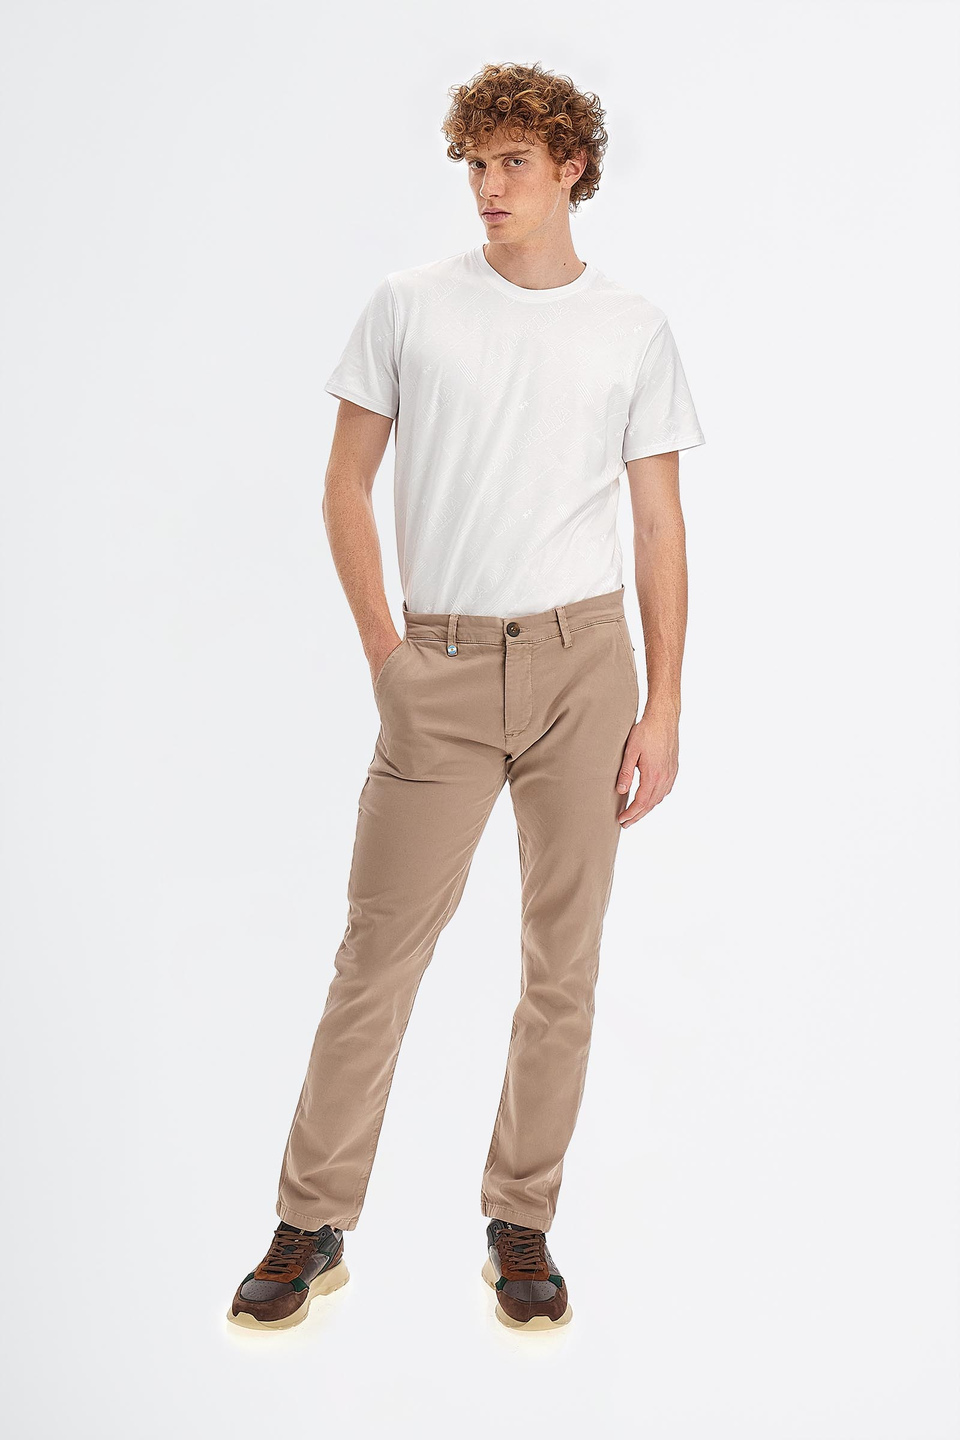 Pantalón de algodón elástico chino slim fit para hombre | La Martina - Official Online Shop